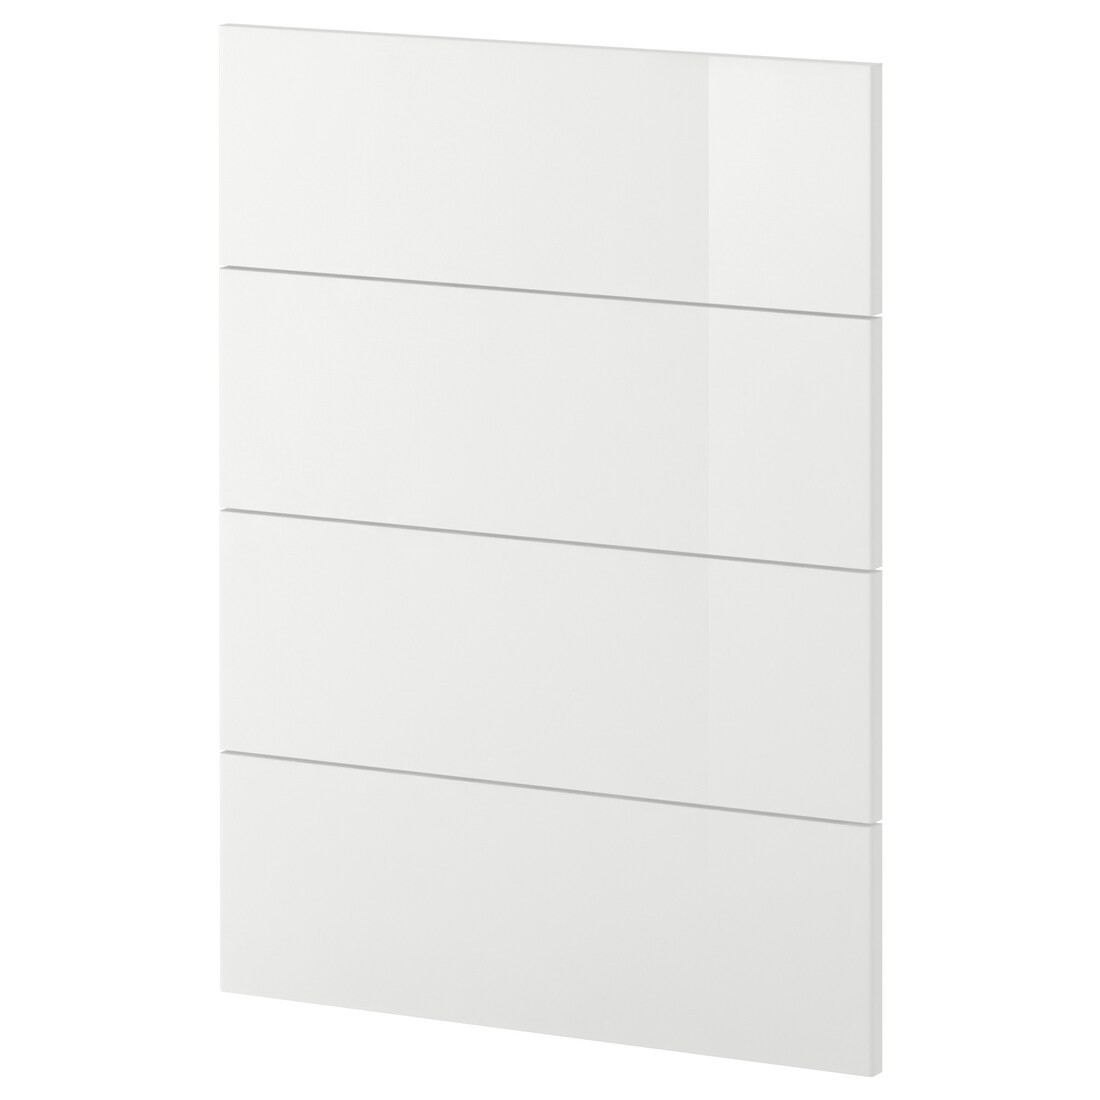 IKEA METOD МЕТОД 4 фасада для посудомоечной машины, Ringhult белый, 60 см 59450005 | 594.500.05